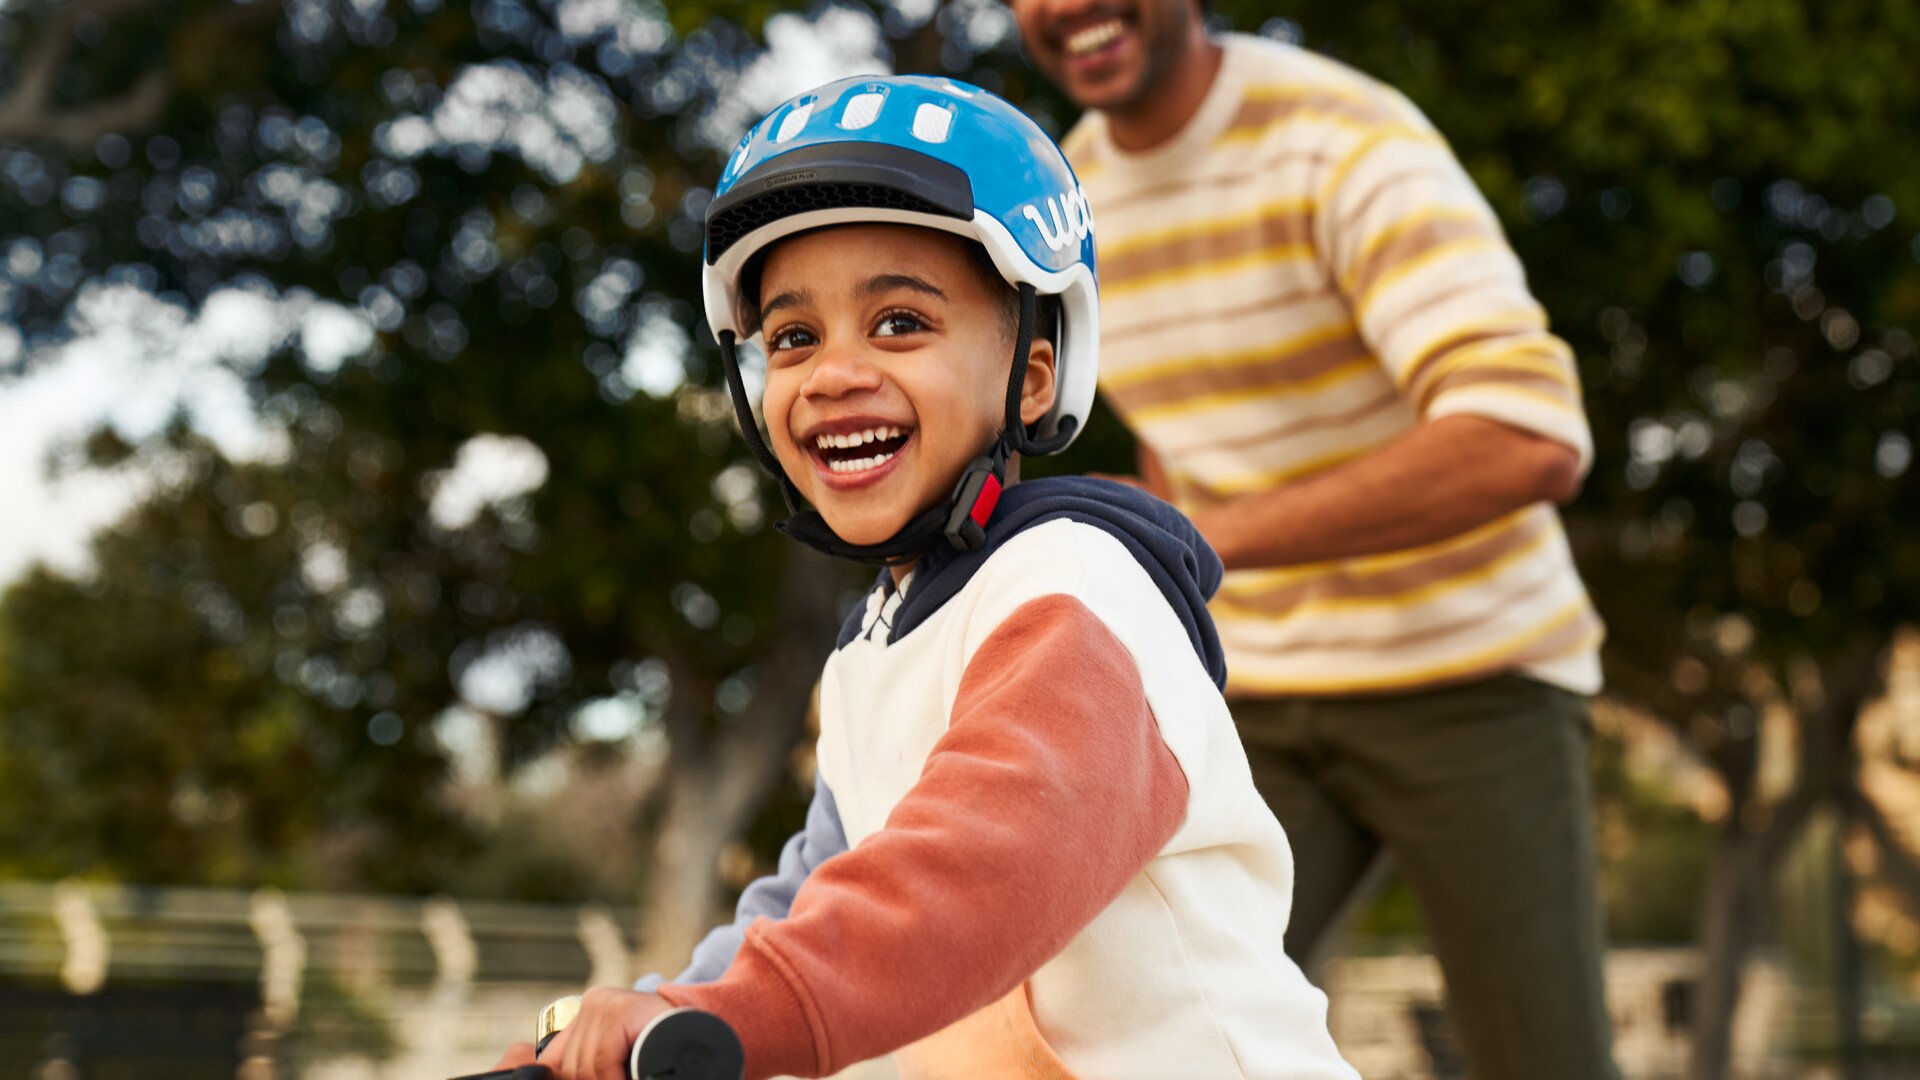 Ein Kind auf einem Fahrrad und mit einem blauen Fahrradhelm von woom blickt lachend in die Kamera. Im Hintergrund ist der Vater zu sehen.